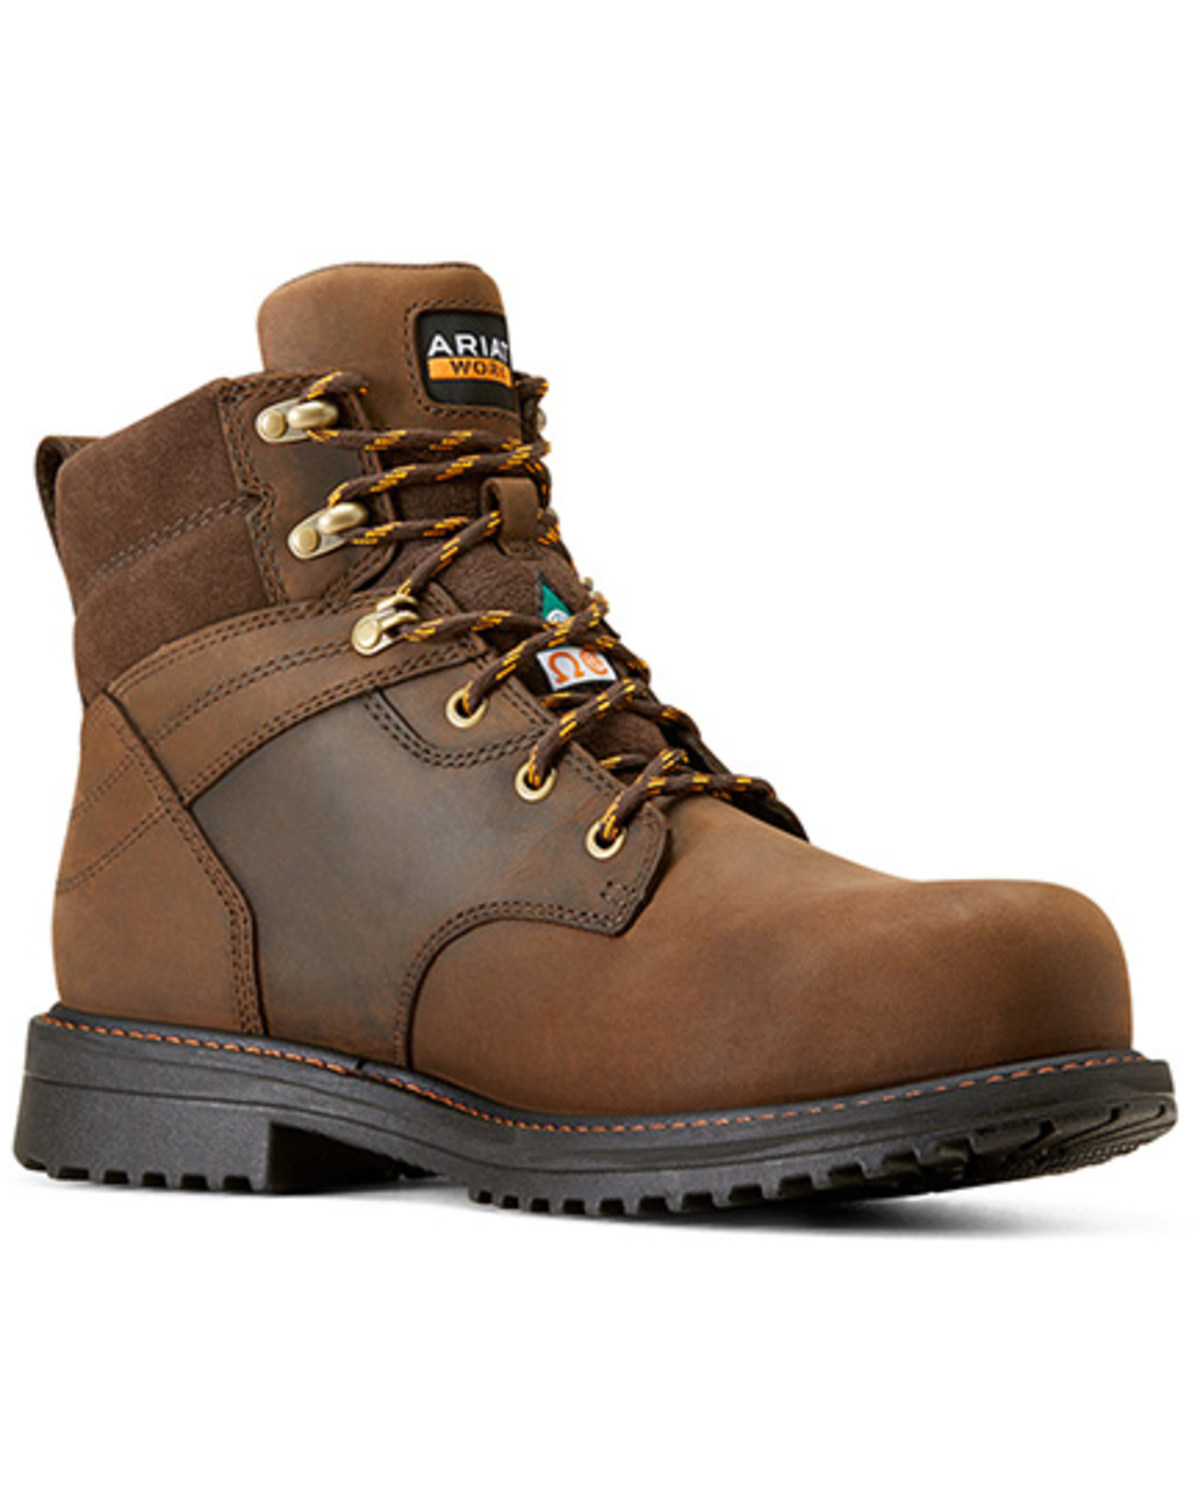 Ariat Men's 6" RigTEK CSA Waterproof Work Boots - Composite Toe